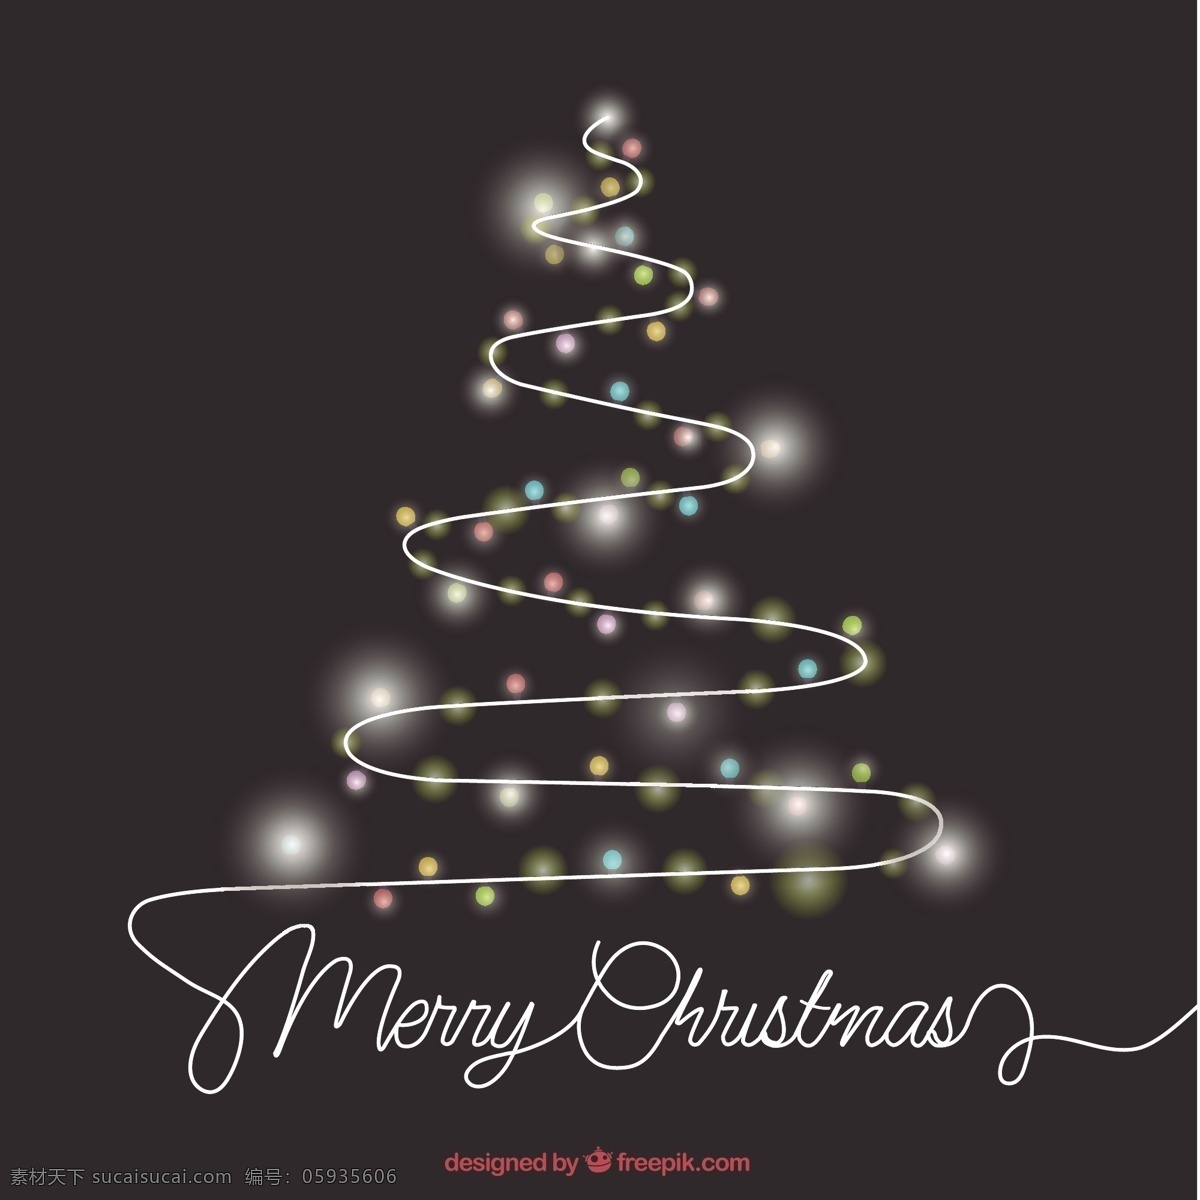 圣诞树的灯 圣诞树 抽象 灯 圣诞快乐 冬天快乐 圣诞 庆祝 节日 节日快乐 圣诞灯 快乐的季节 十二月了 黑色